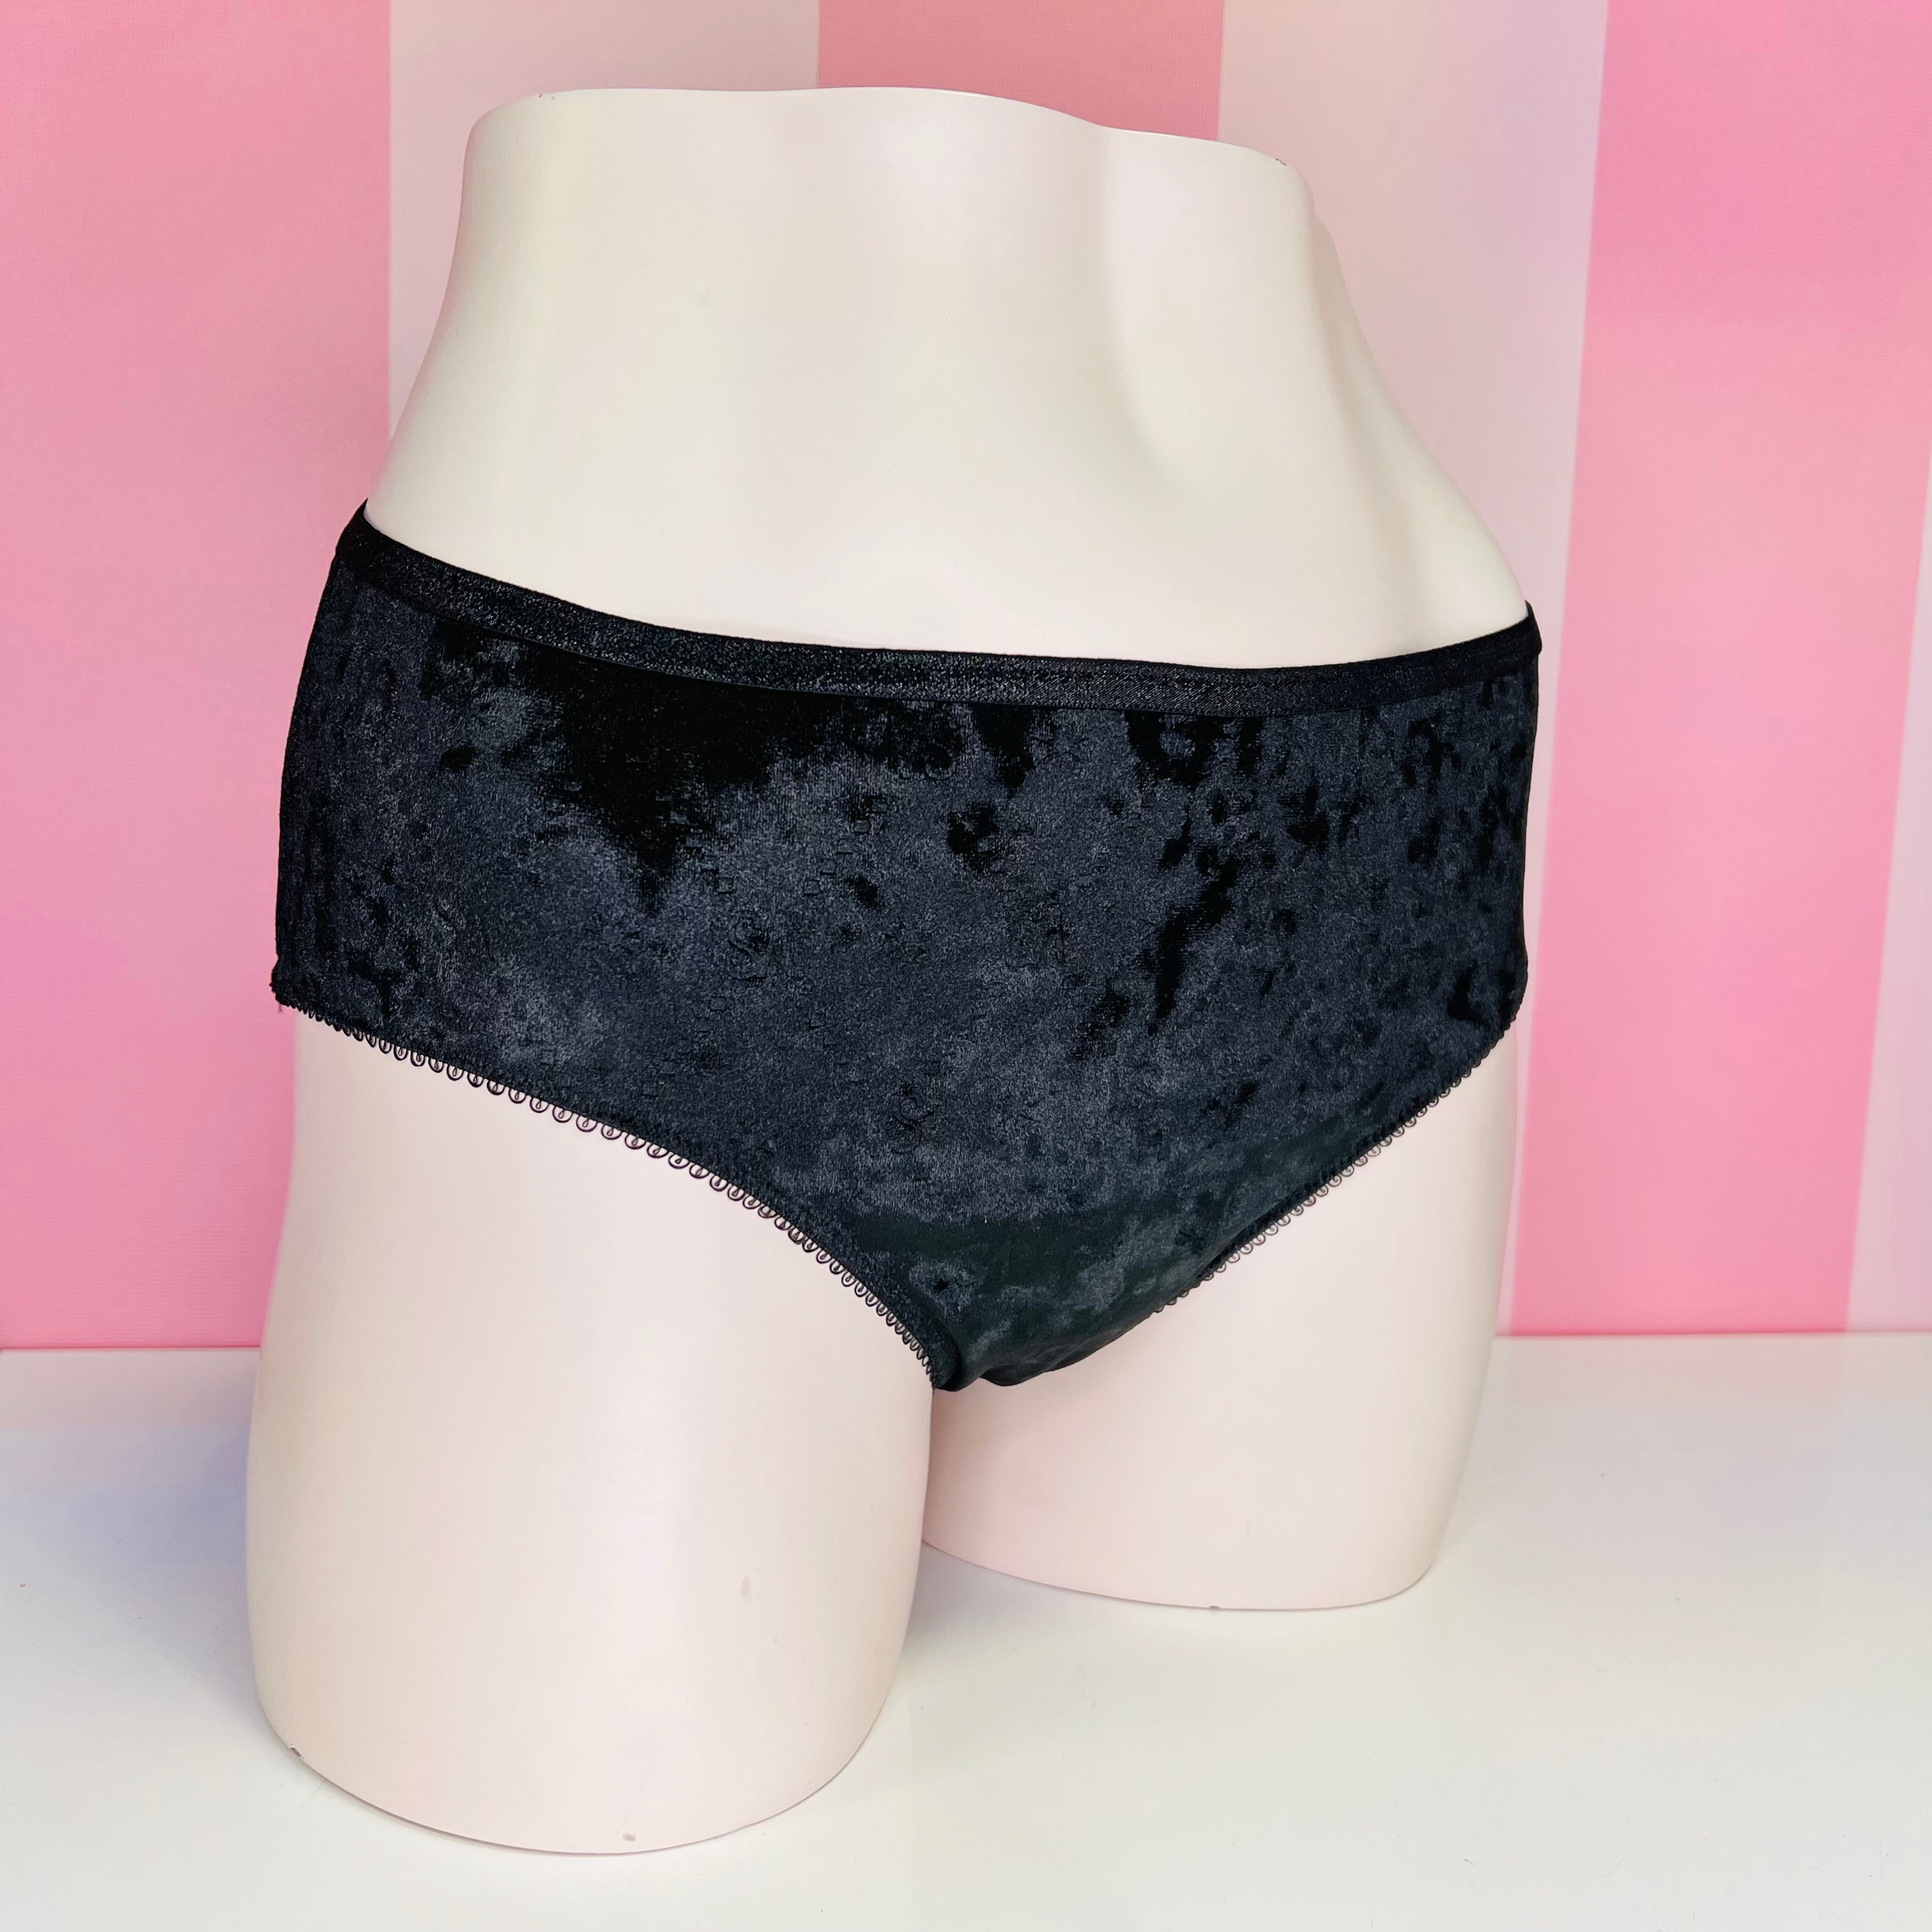 Semišové kalhotky - Černá / XL / Nové se štítky - Kalhotky Victoria’s Secret